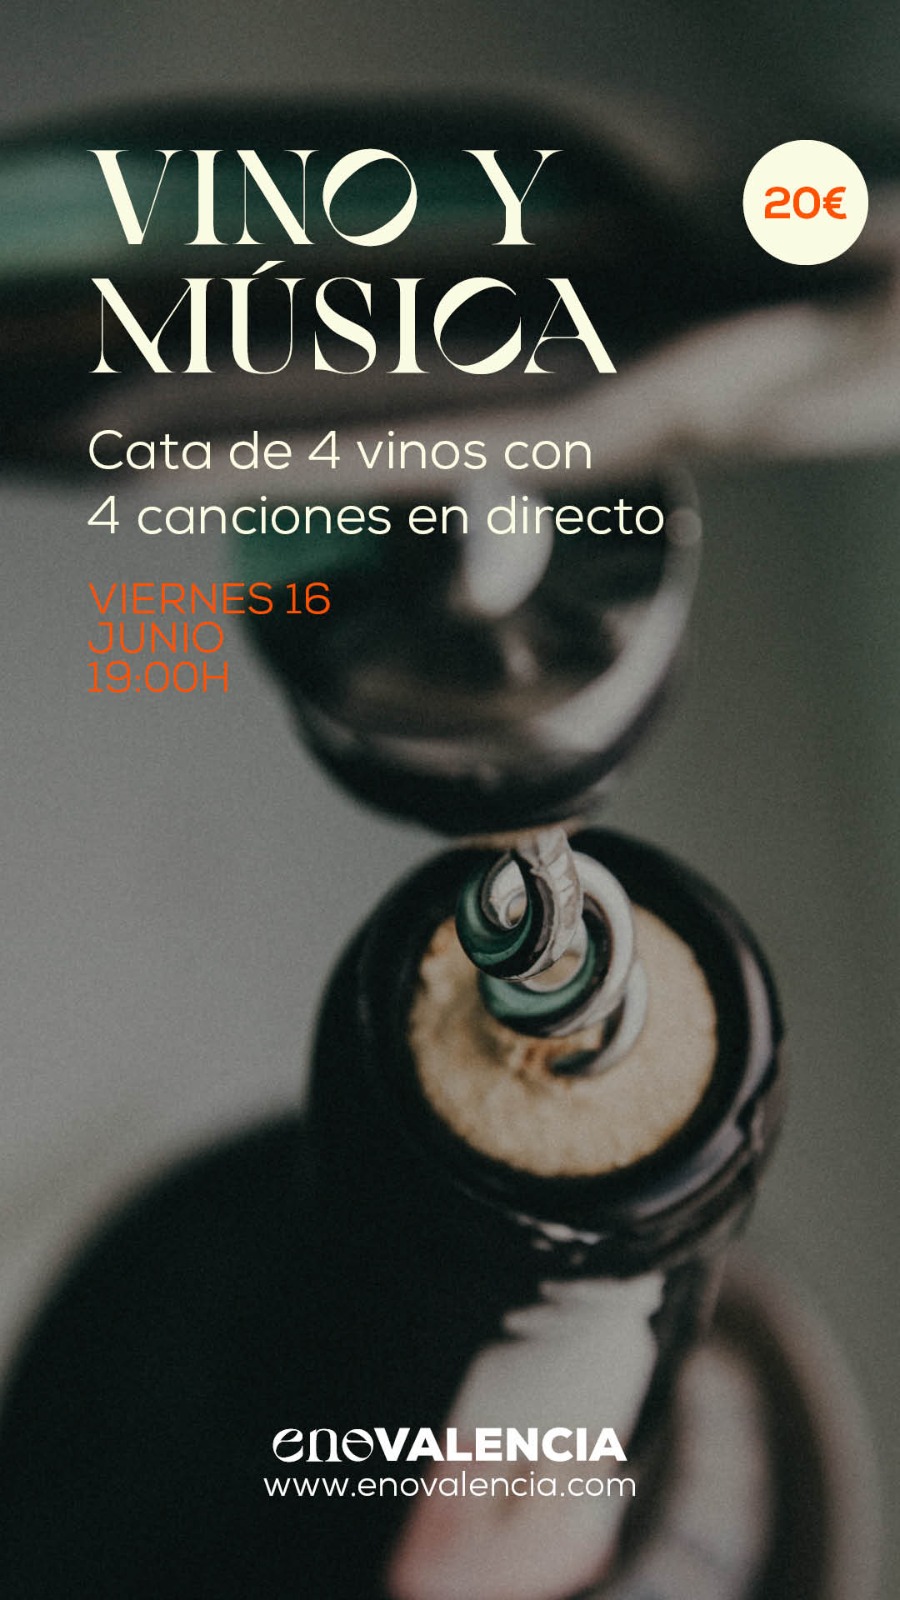 Vino y música Cata 4 Vinos y 4 Canciones EnoValencia - Cata, eventos y venta de vino 5